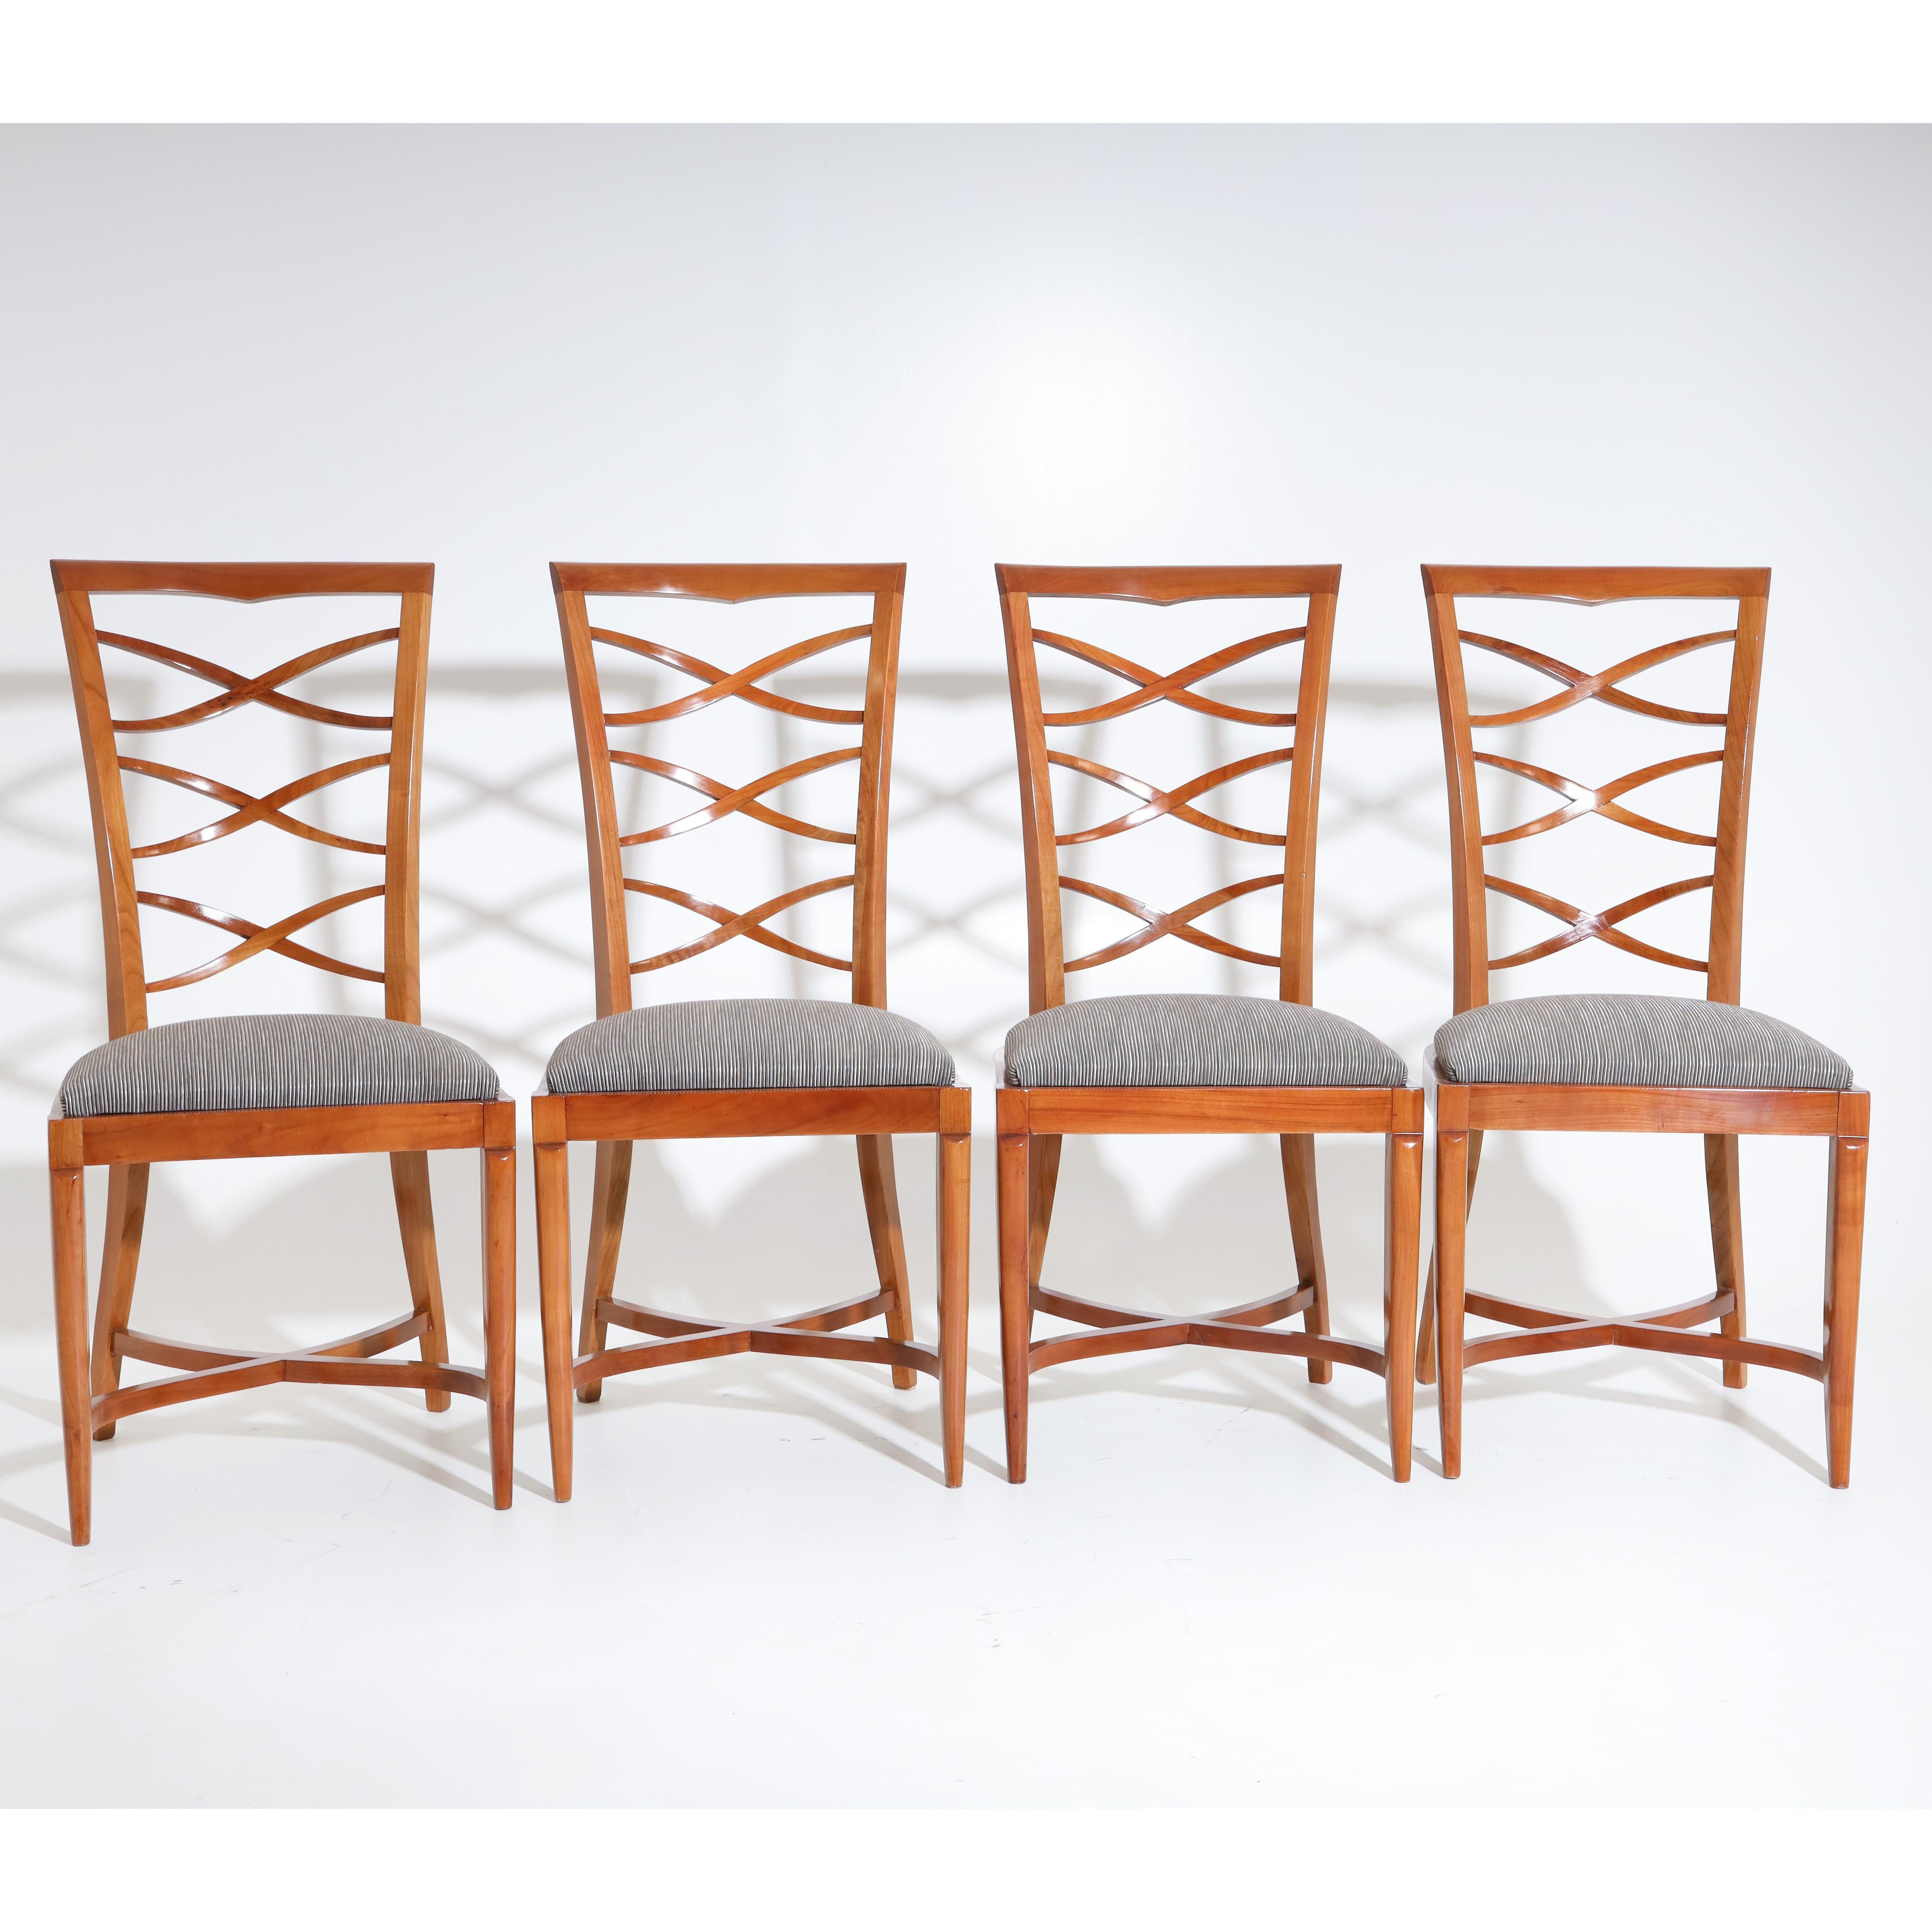 Ensemble de quatre chaises Art Déco en merisier, avec dossiers ajourés trapézoïdaux et sièges tapissés. Les chaises reposent sur des pieds élégamment incurvés avec des renforts en forme de X. Les chaises sont nouvellement recouvertes d'un tissu rayé